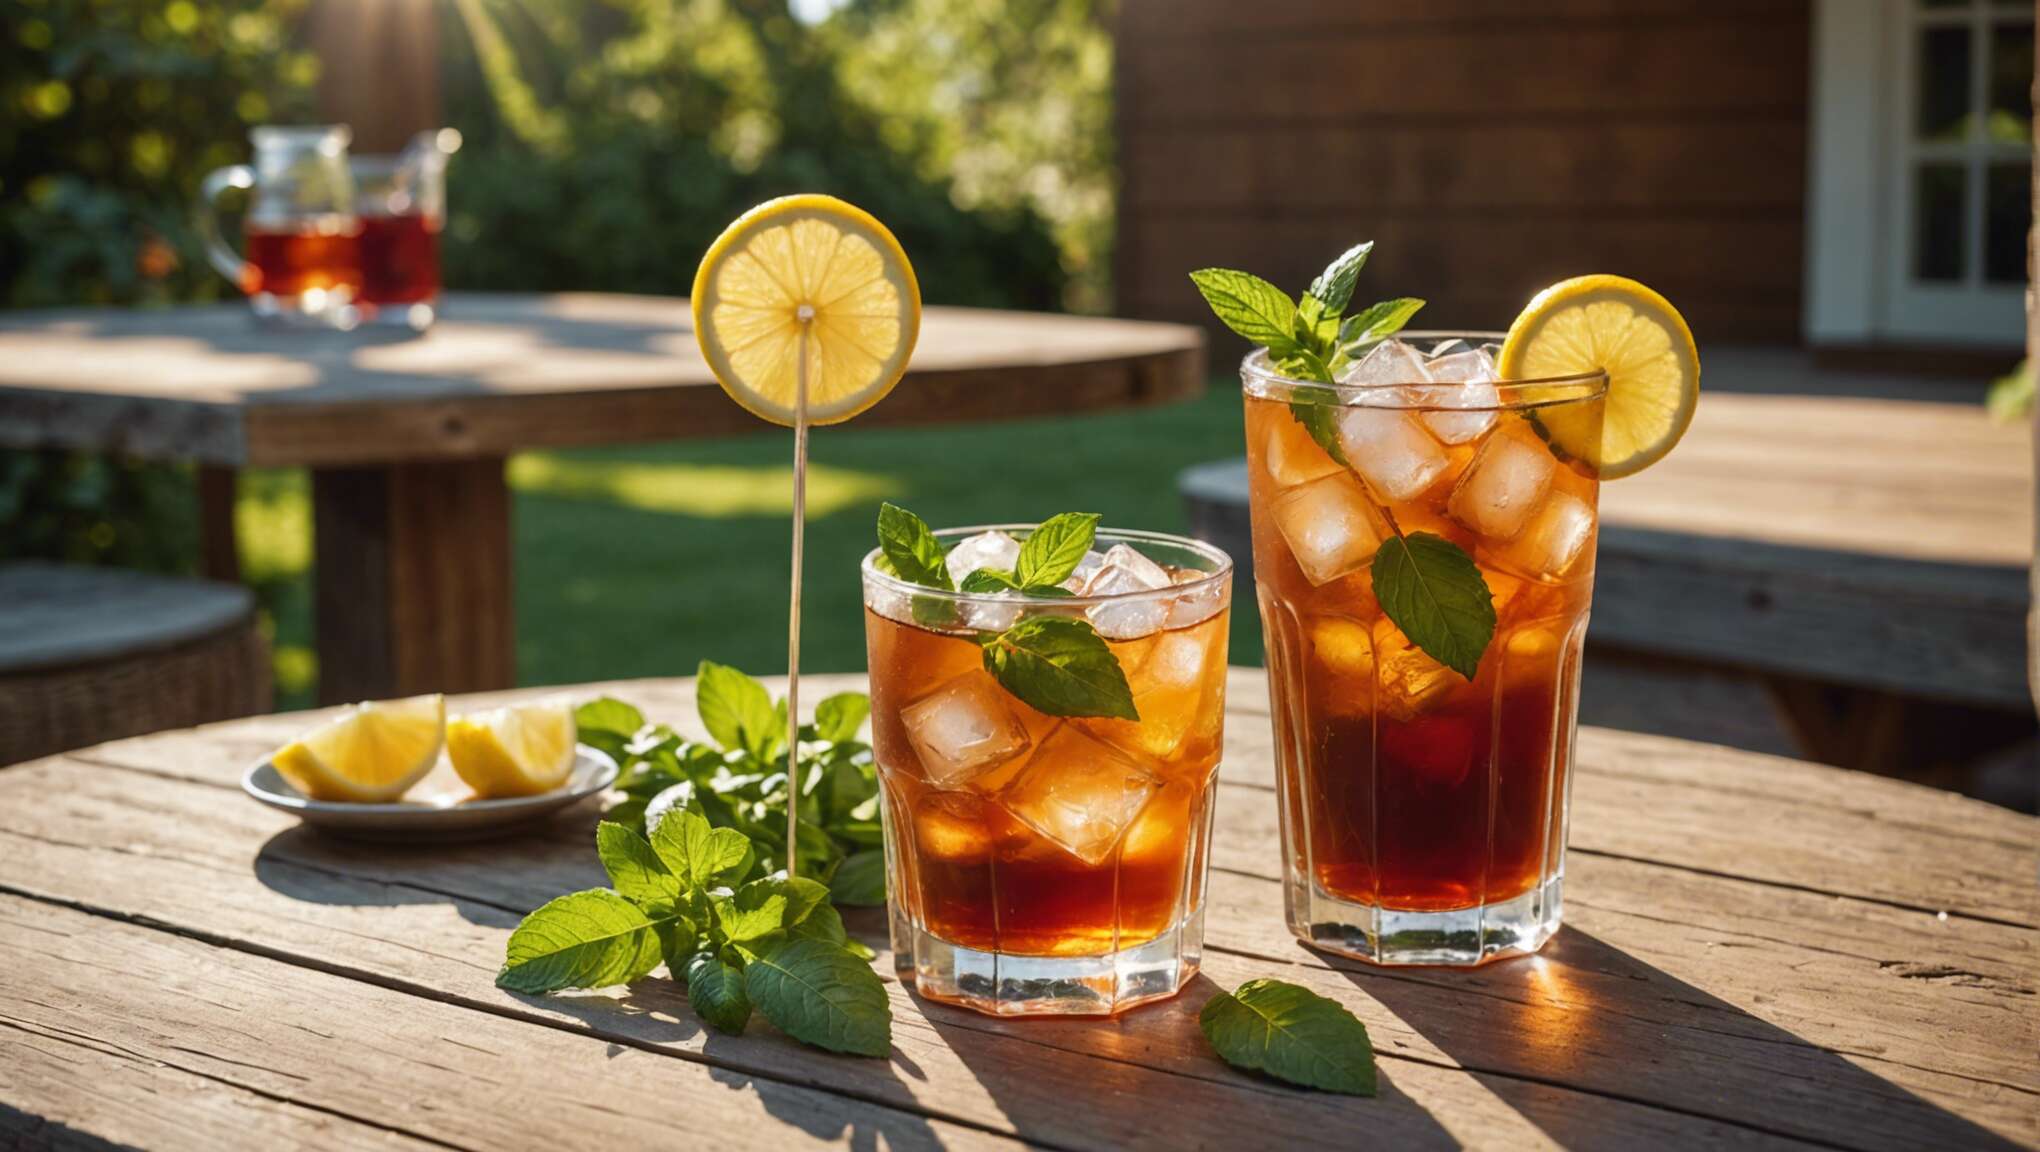 Bienfaits et plaisirs : choisir son thé pour un cocktail santé